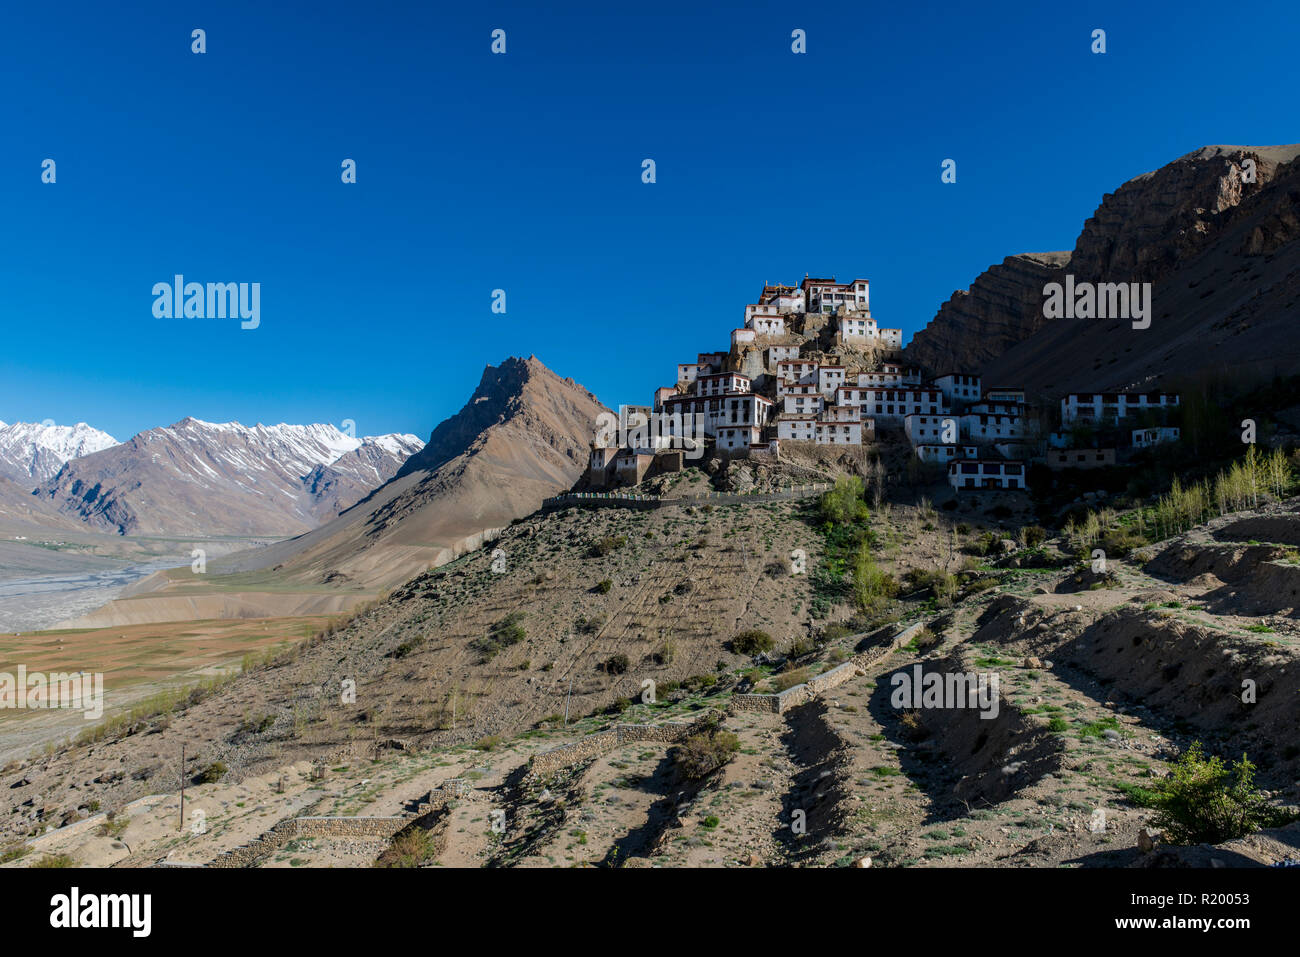 Vista su Ki Gompa, un tibetano monastero buddista situato sulla sommità di una collina ad una altitudine di 4,166 metri, la Spiti Valley e montagne coperte di neve in Foto Stock